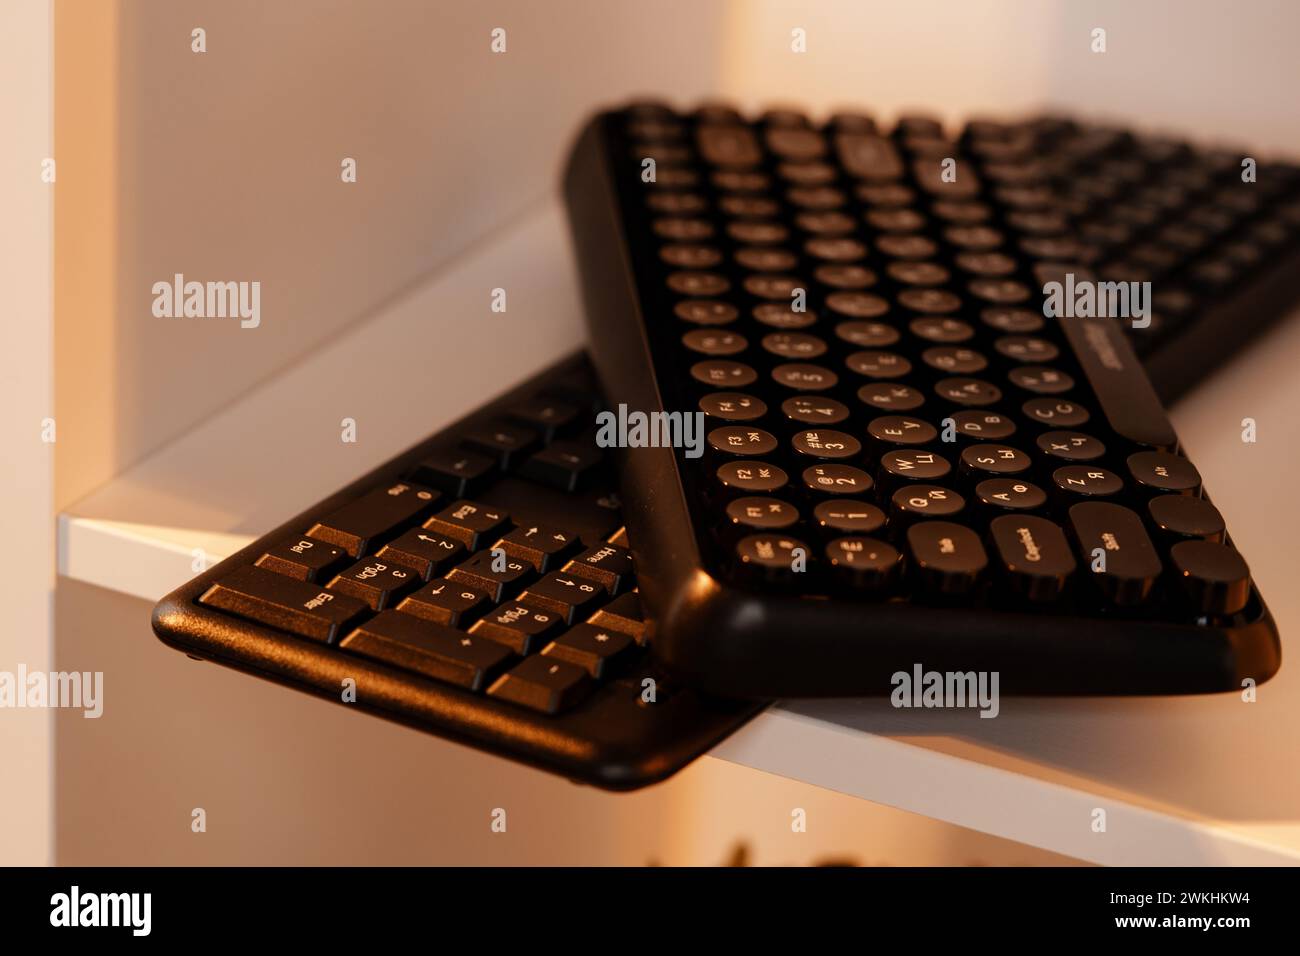 Dos teclados inalámbricos negros en un estante Foto de stock